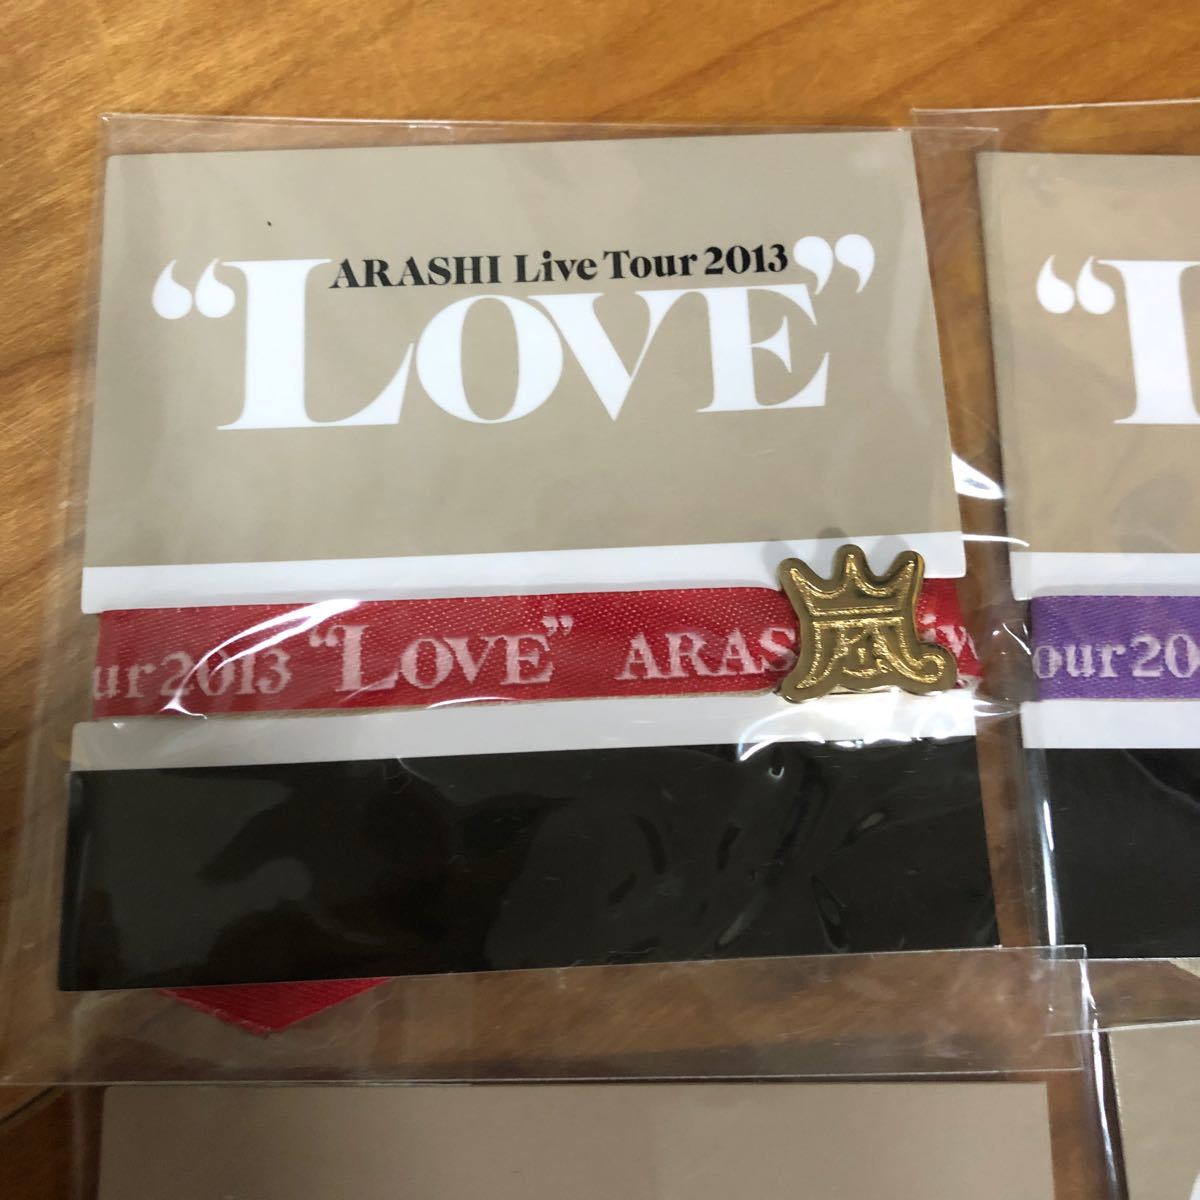 嵐 LOVE TOUR 2013 会場限定 ARASHI 嵐グッズ リボンブレス 限定グッズ